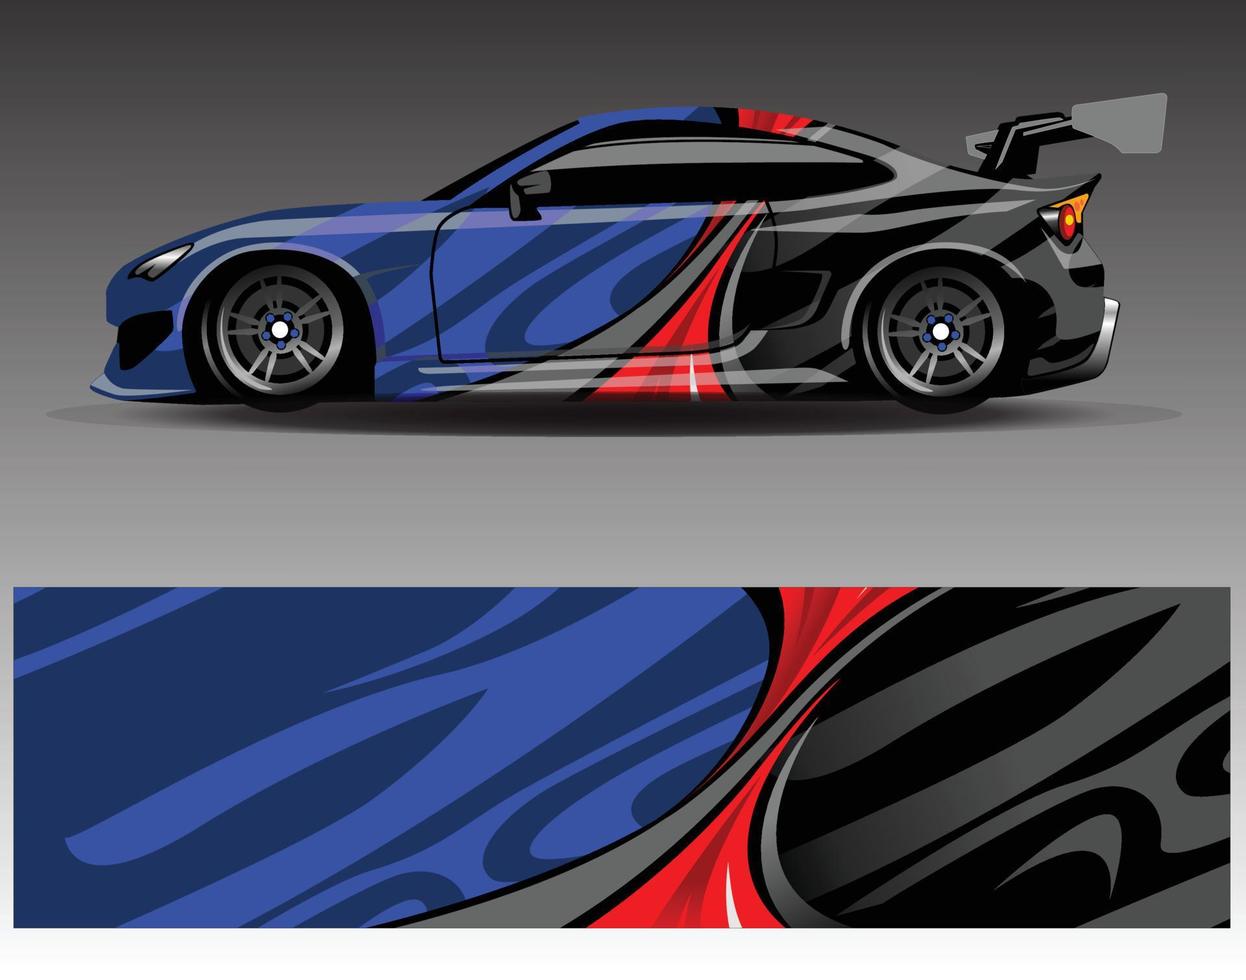 etiqueta engomada del vinilo del abrigo del vector del gráfico de la etiqueta del coche. diseños de rayas abstractas gráficas para vehículos de carreras